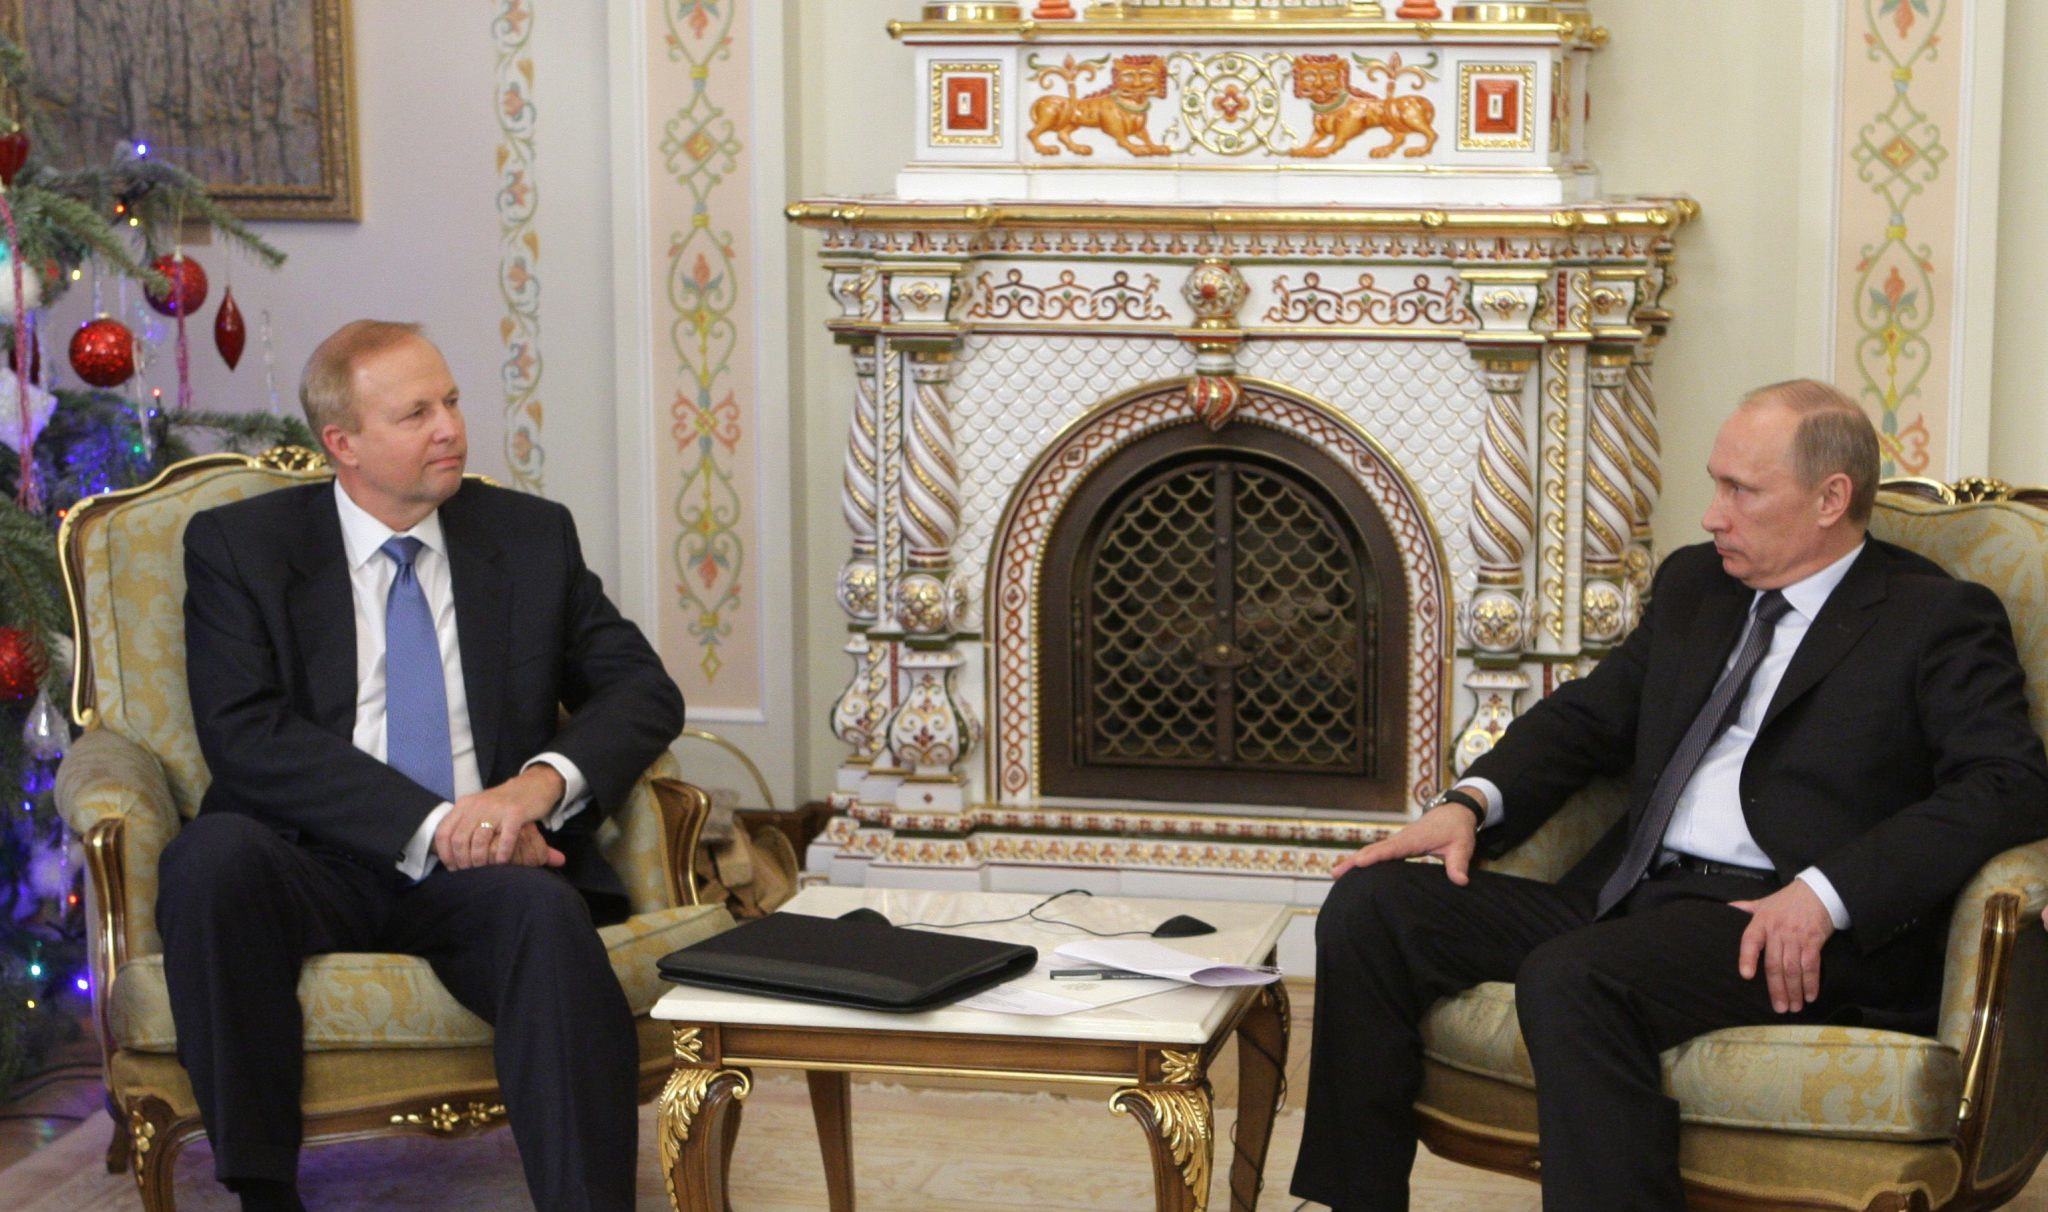 Robert Dudley (left), then BP’s chief executive, meets with Vladimir Putin in 2011. (Photo: Kremlin)